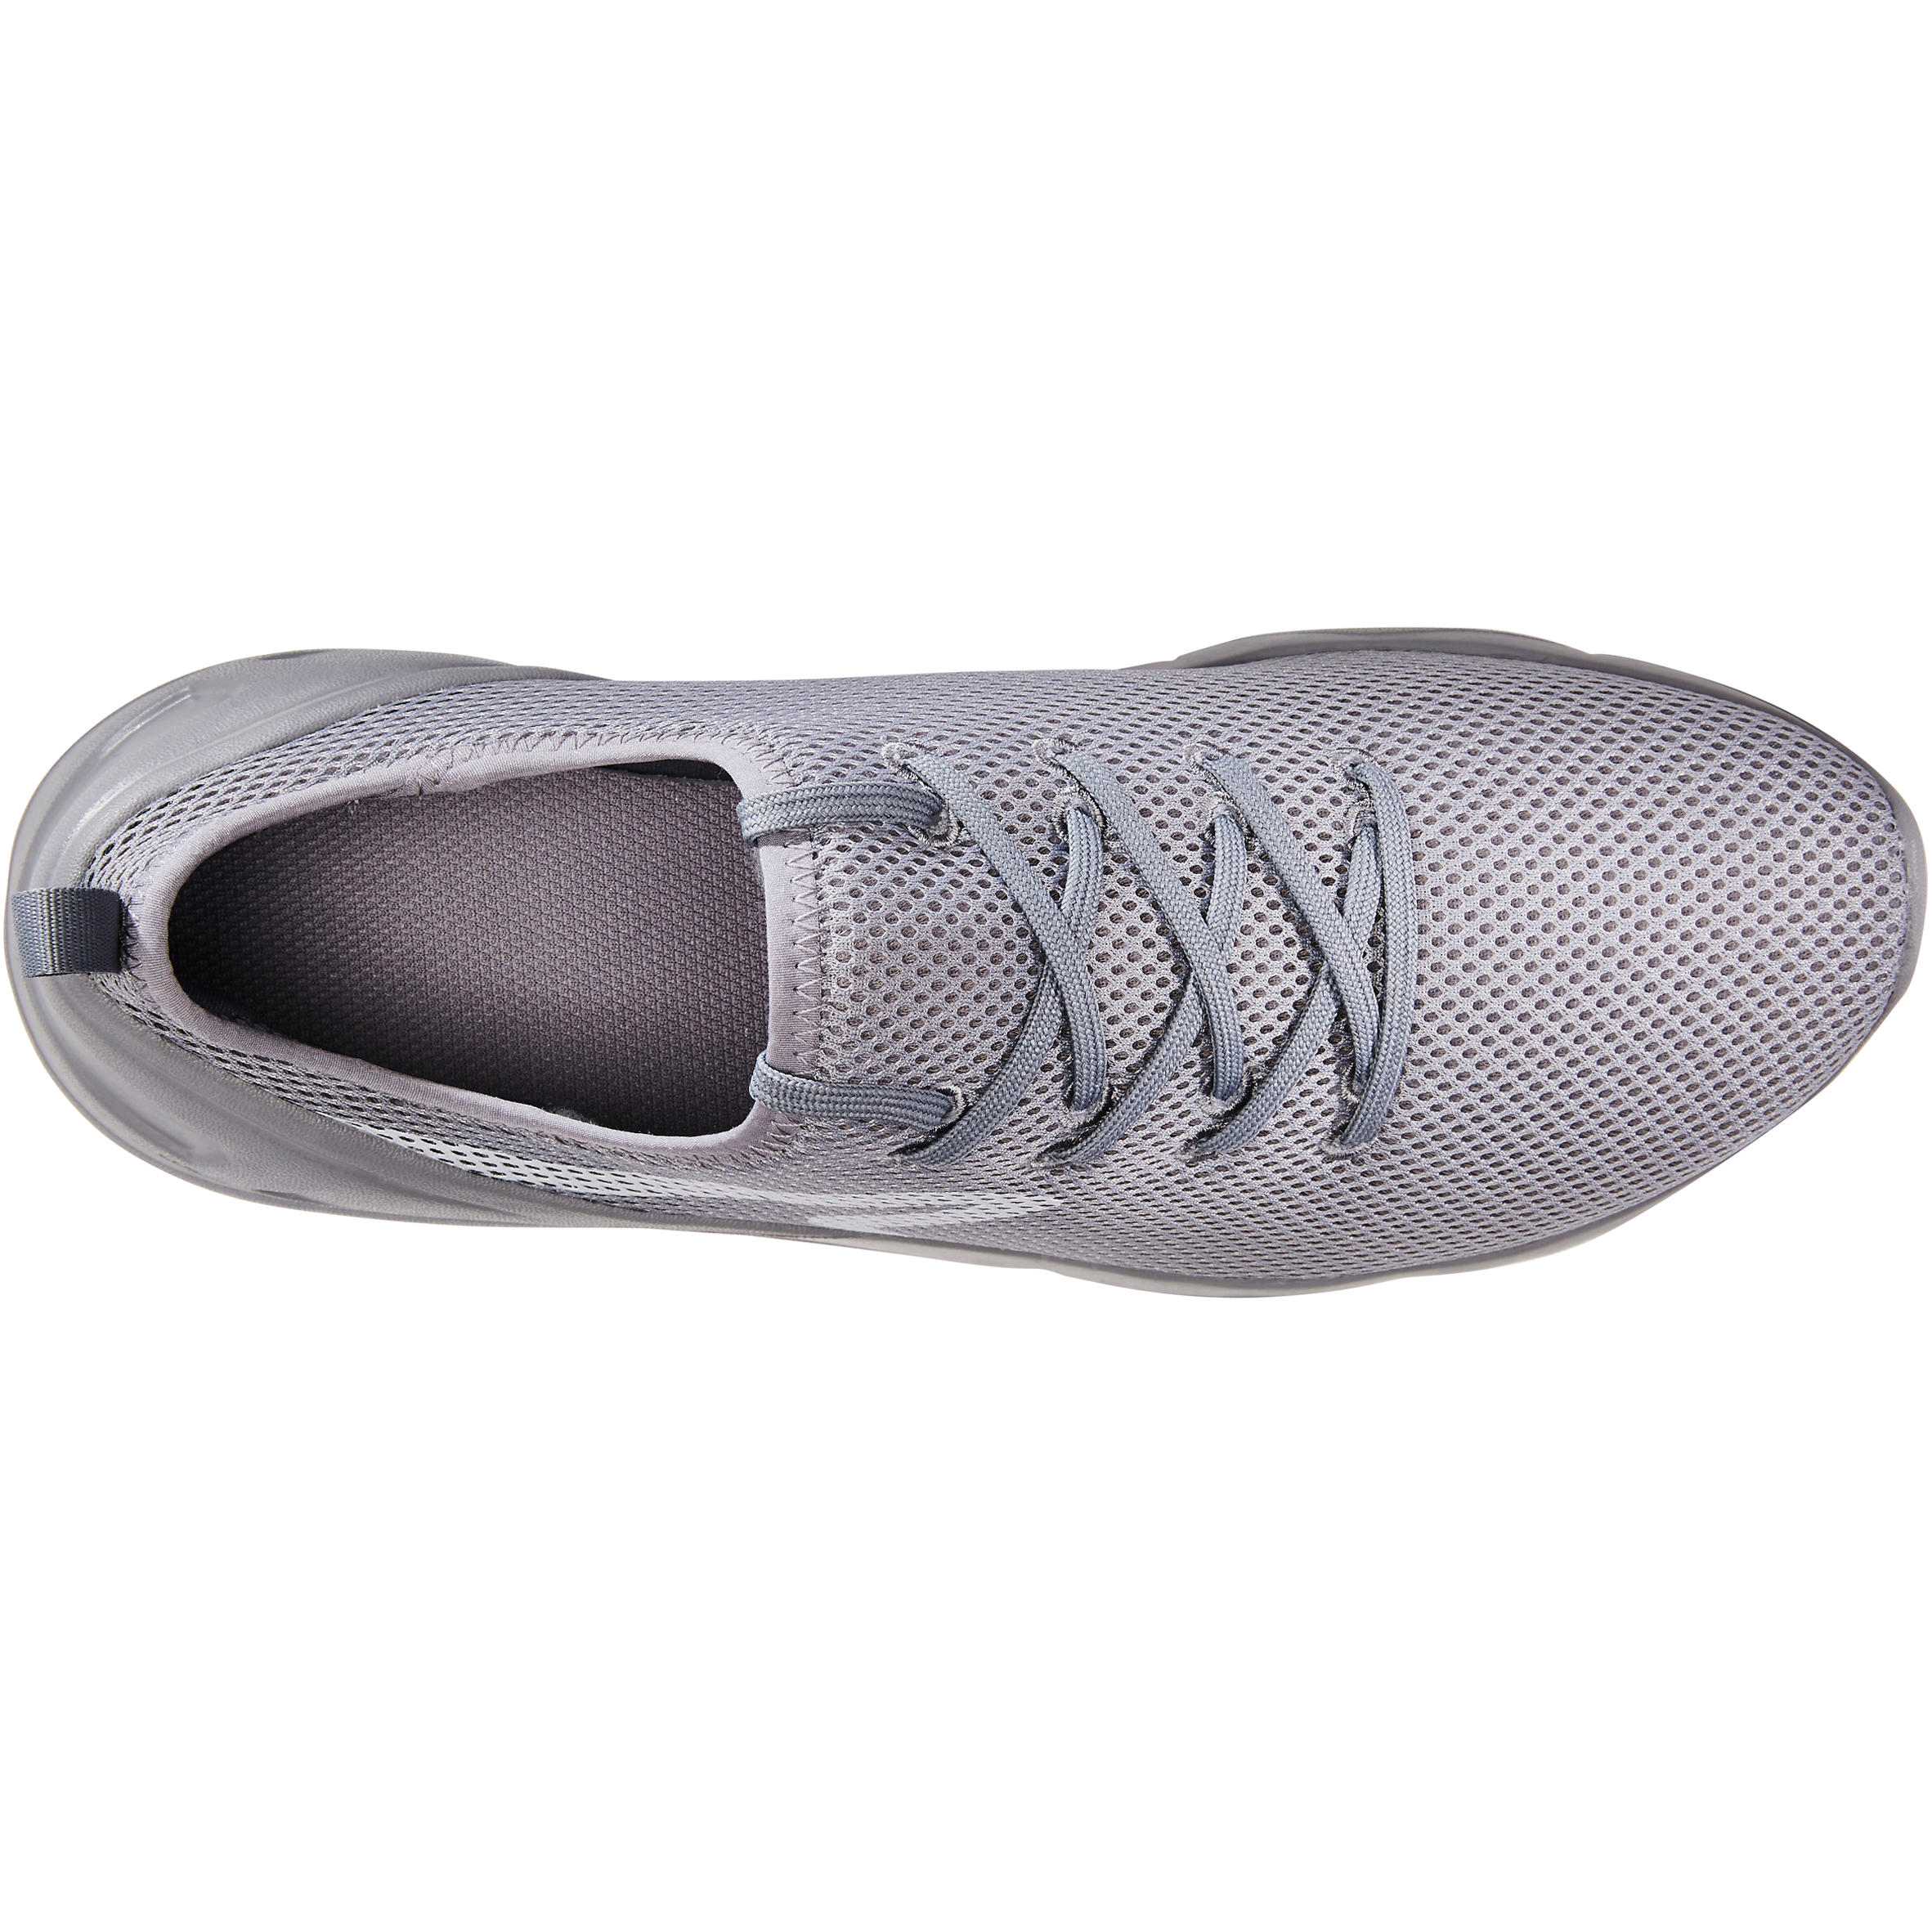 Buy Men's Fitness Walking Shoes|Grey 